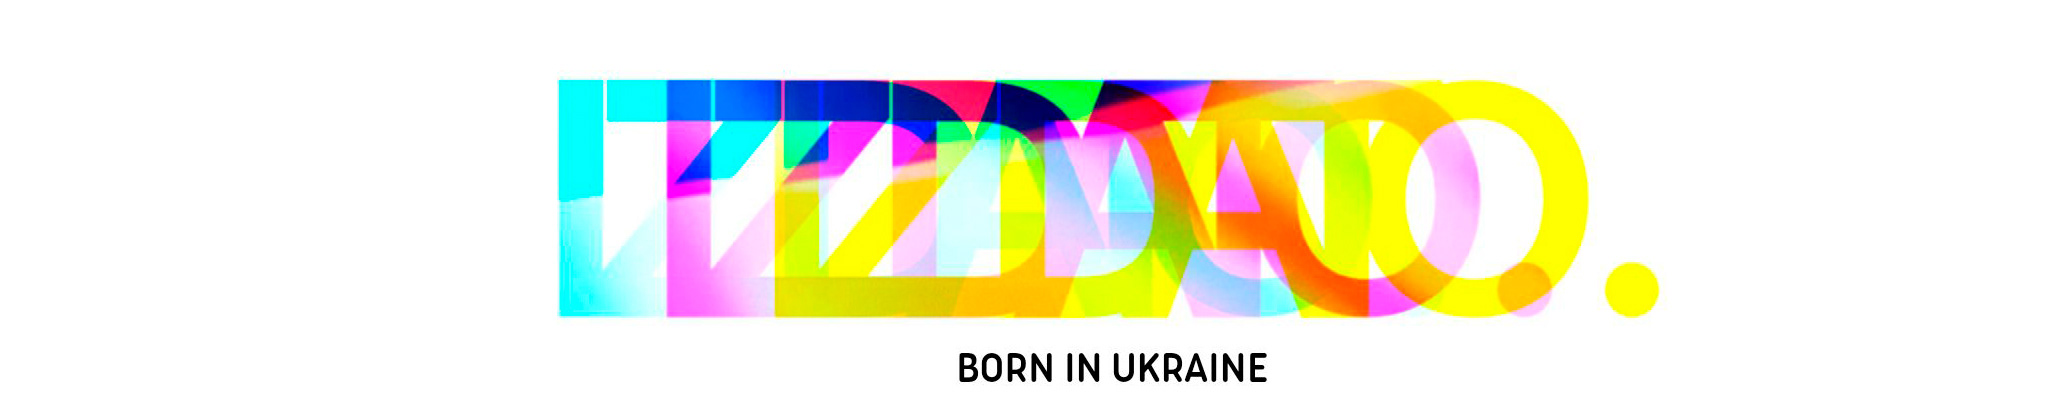 IZDATO AGENCY's profile banner